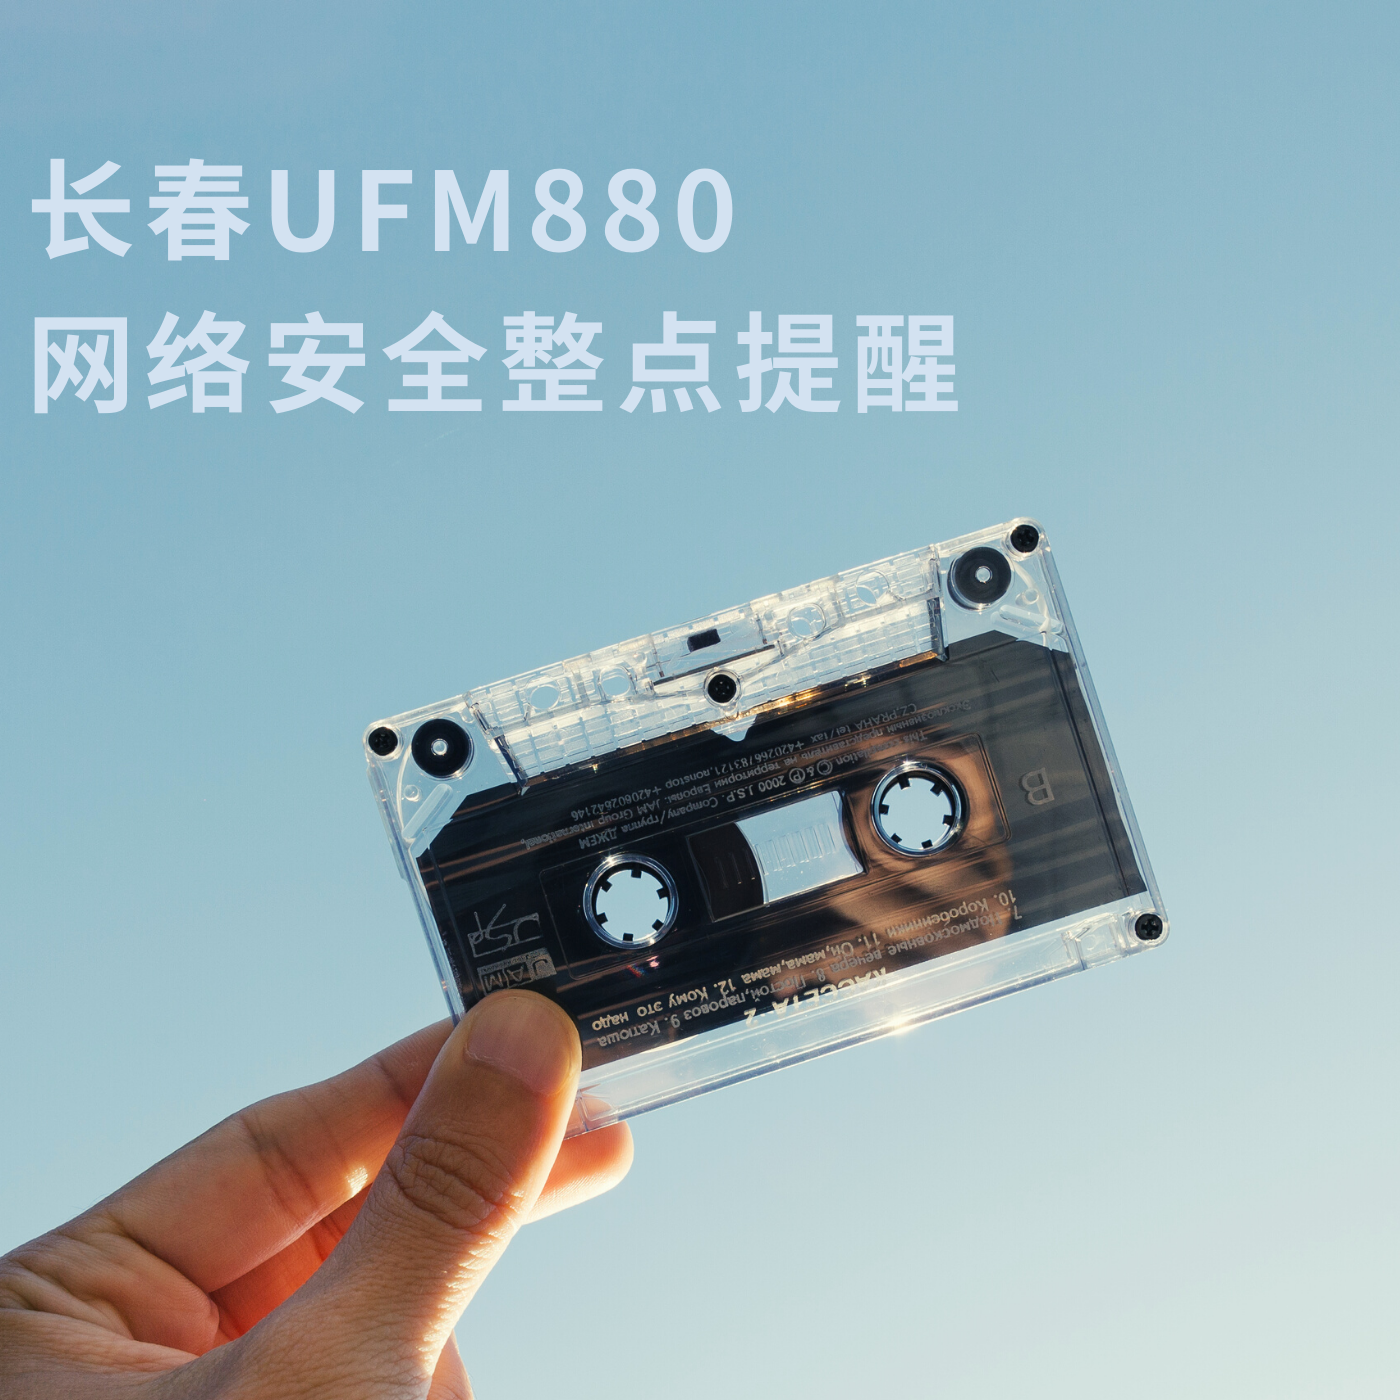 长春UFM880网络安全整点提醒